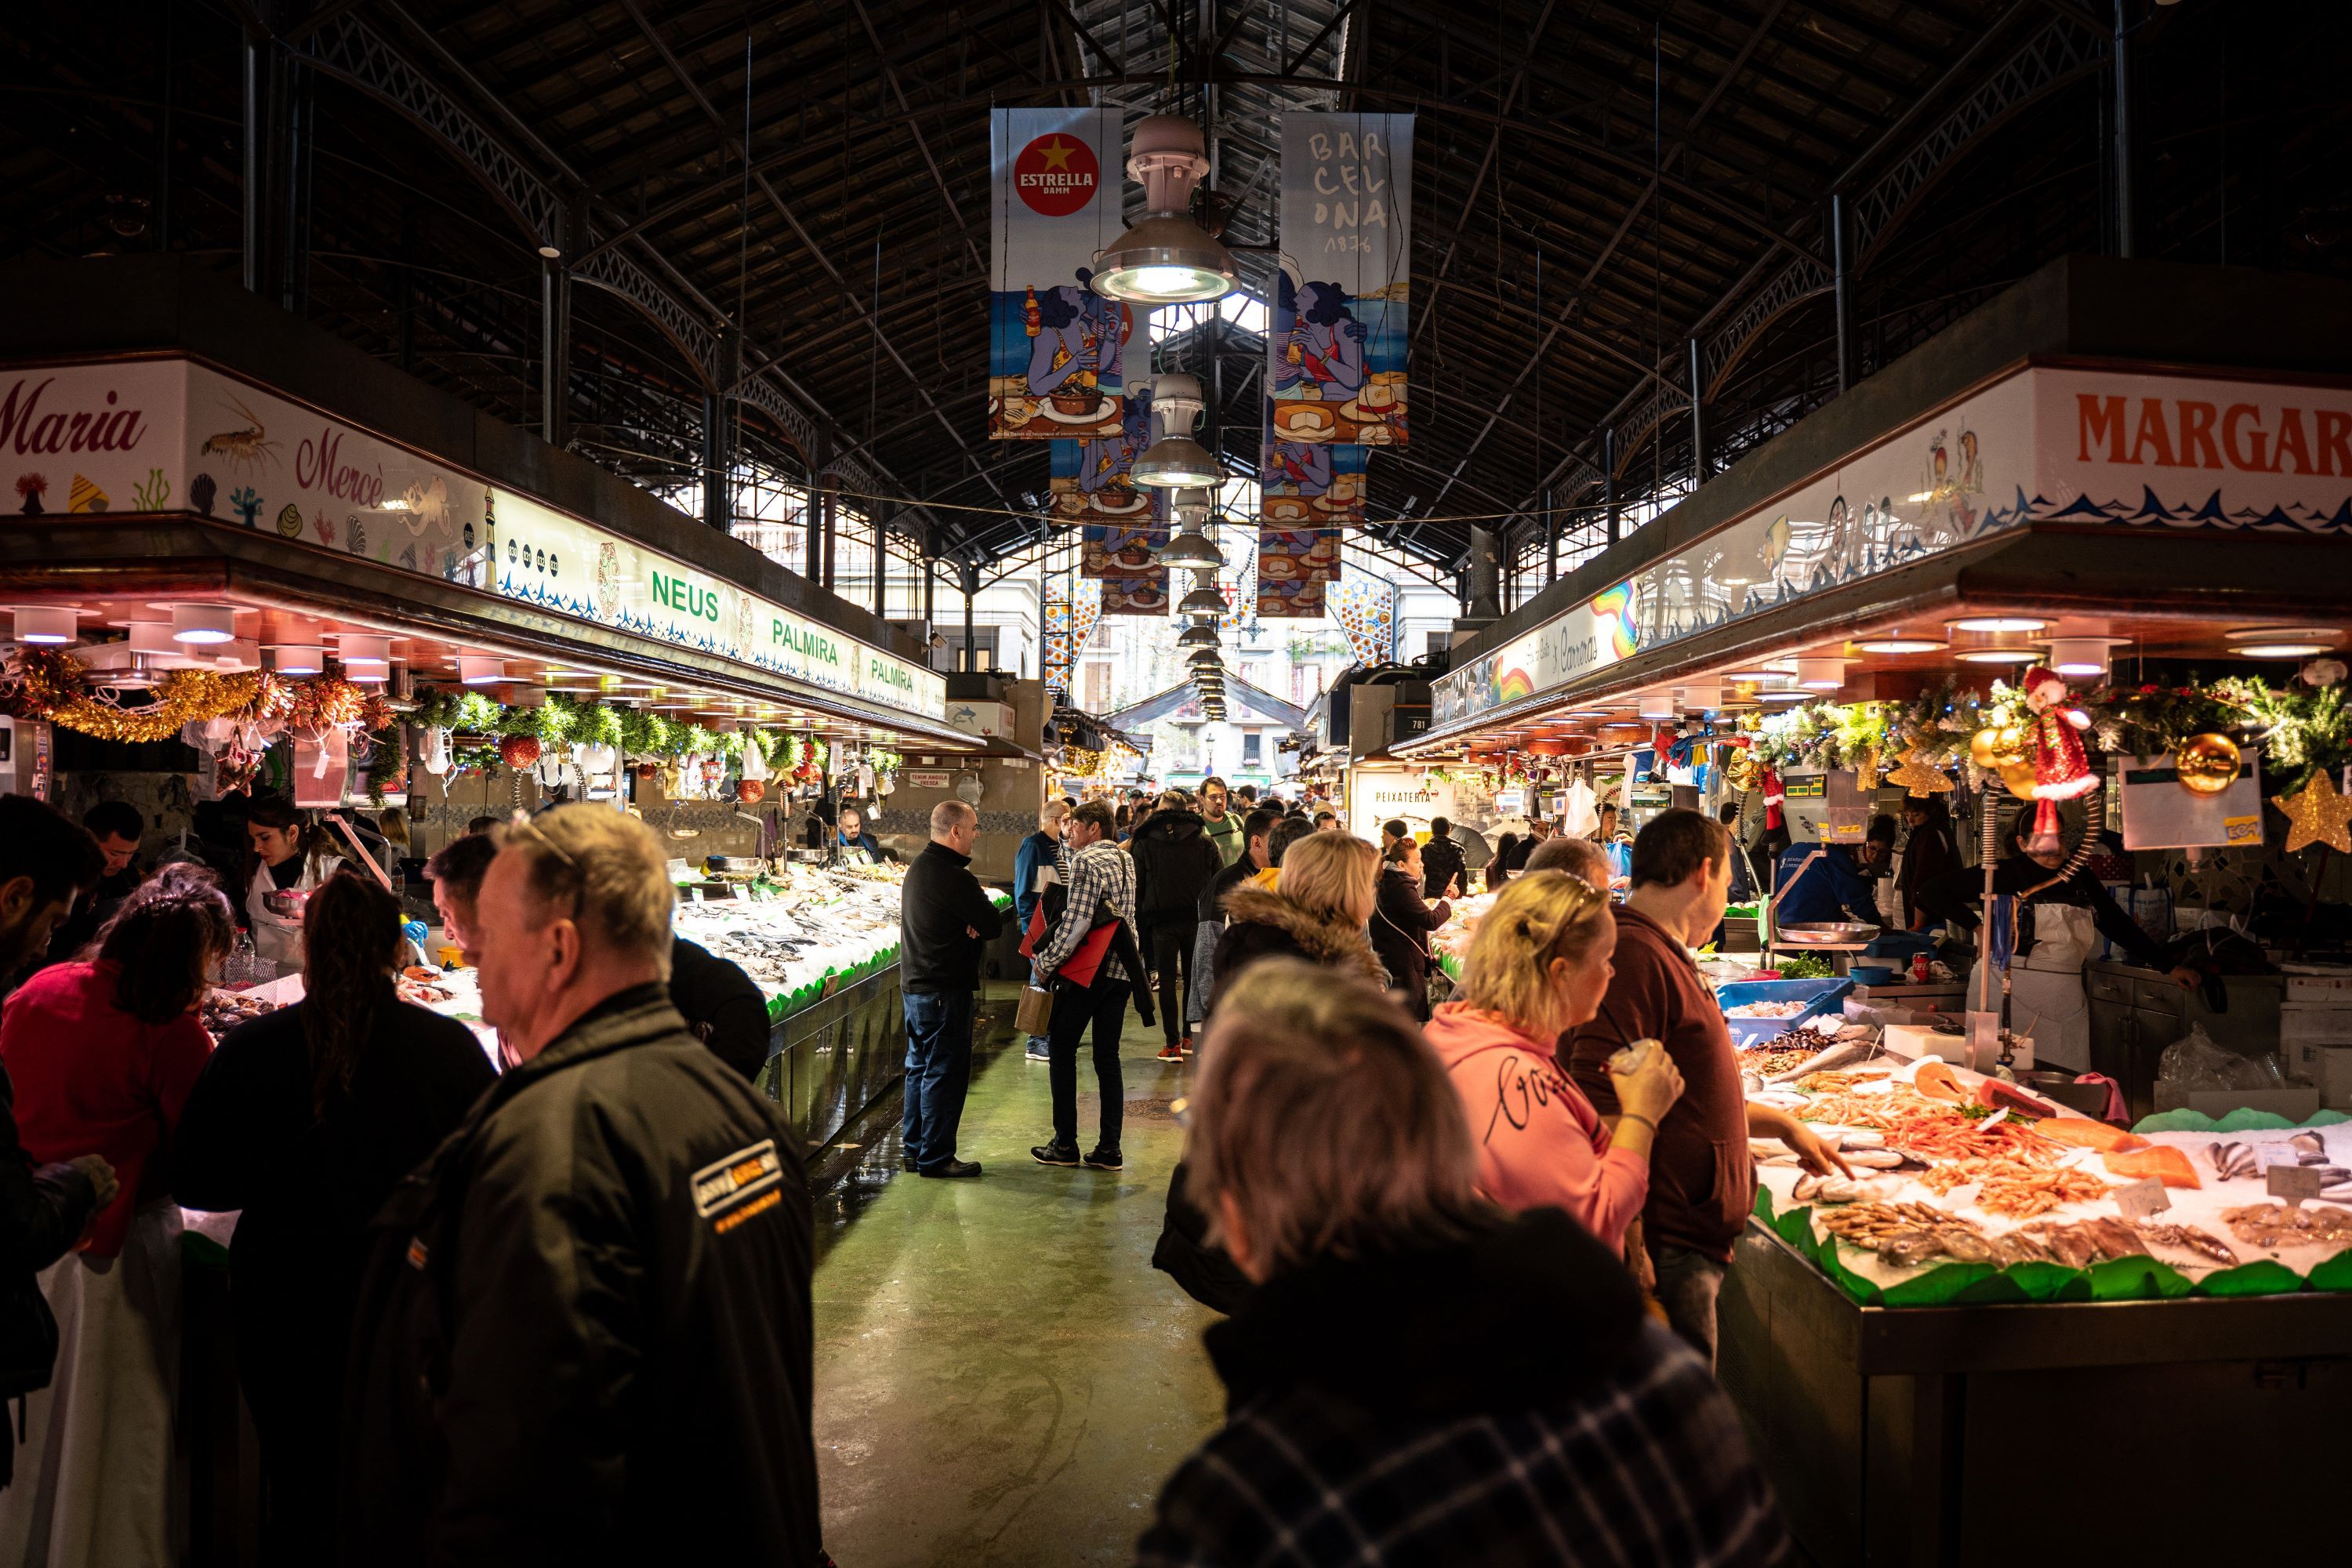 La Boqueria s'alça com el millor mercat d'aliments del món, segons aquest rànquing intercional